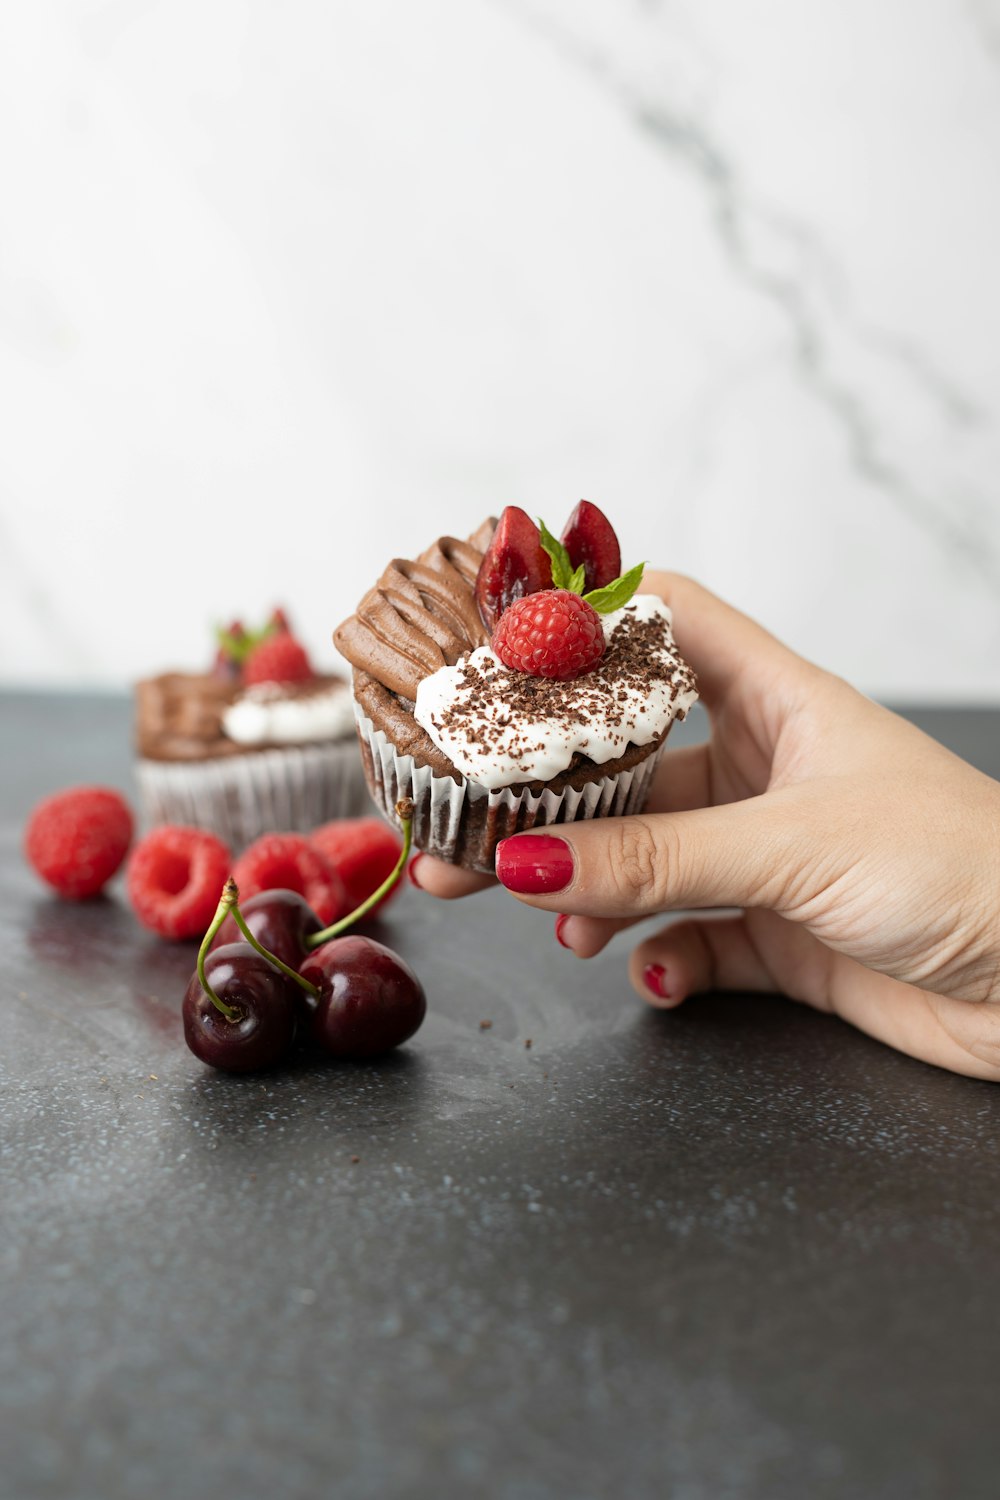 초콜릿 프로스팅과 딸기를 곁들인 컵케이크를 들고 있는 손